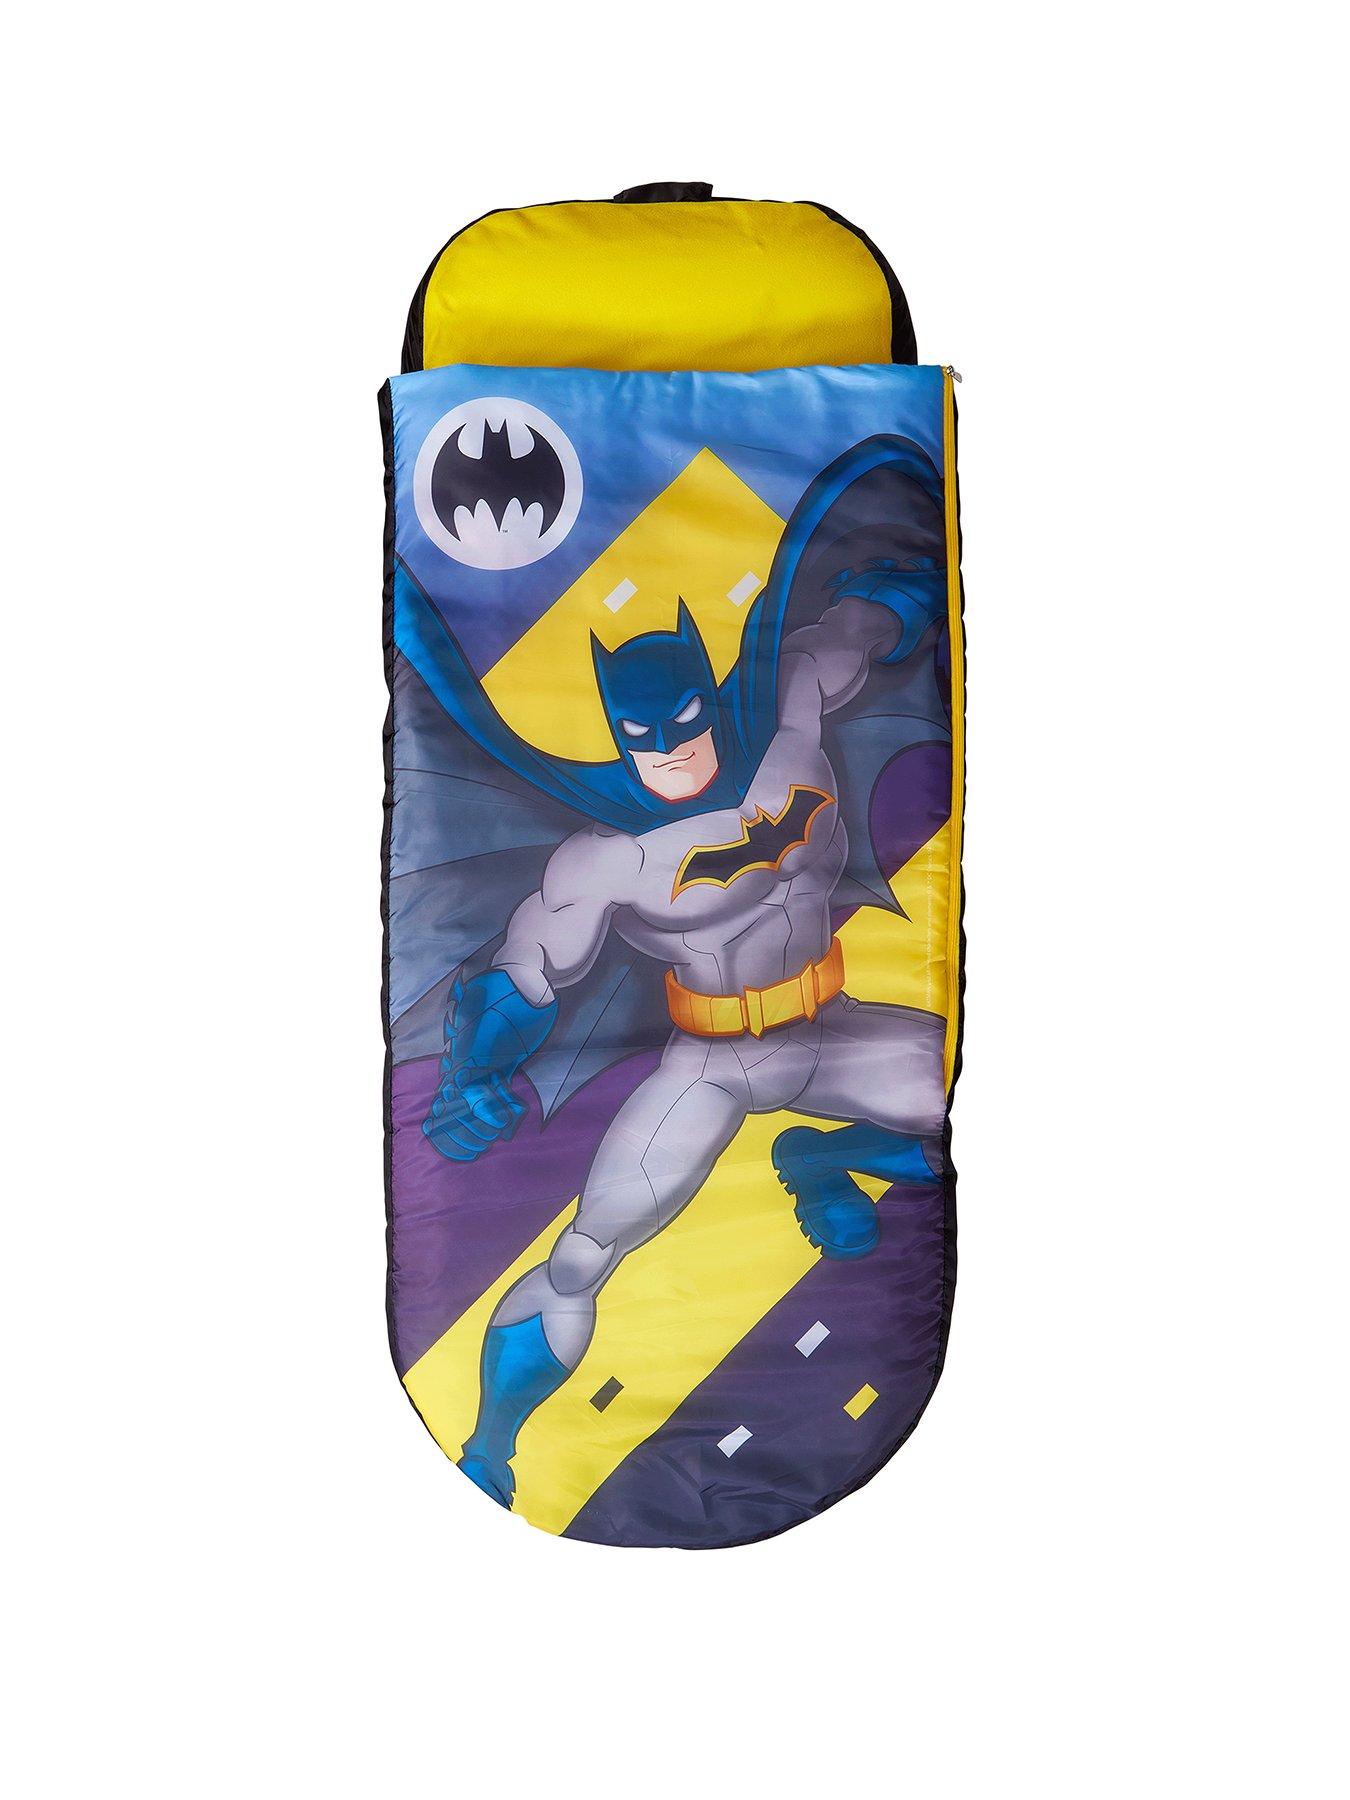 Details about   DC Justice League Batgirl Pop Up Plush 3.5" Figure Batman Collectible 